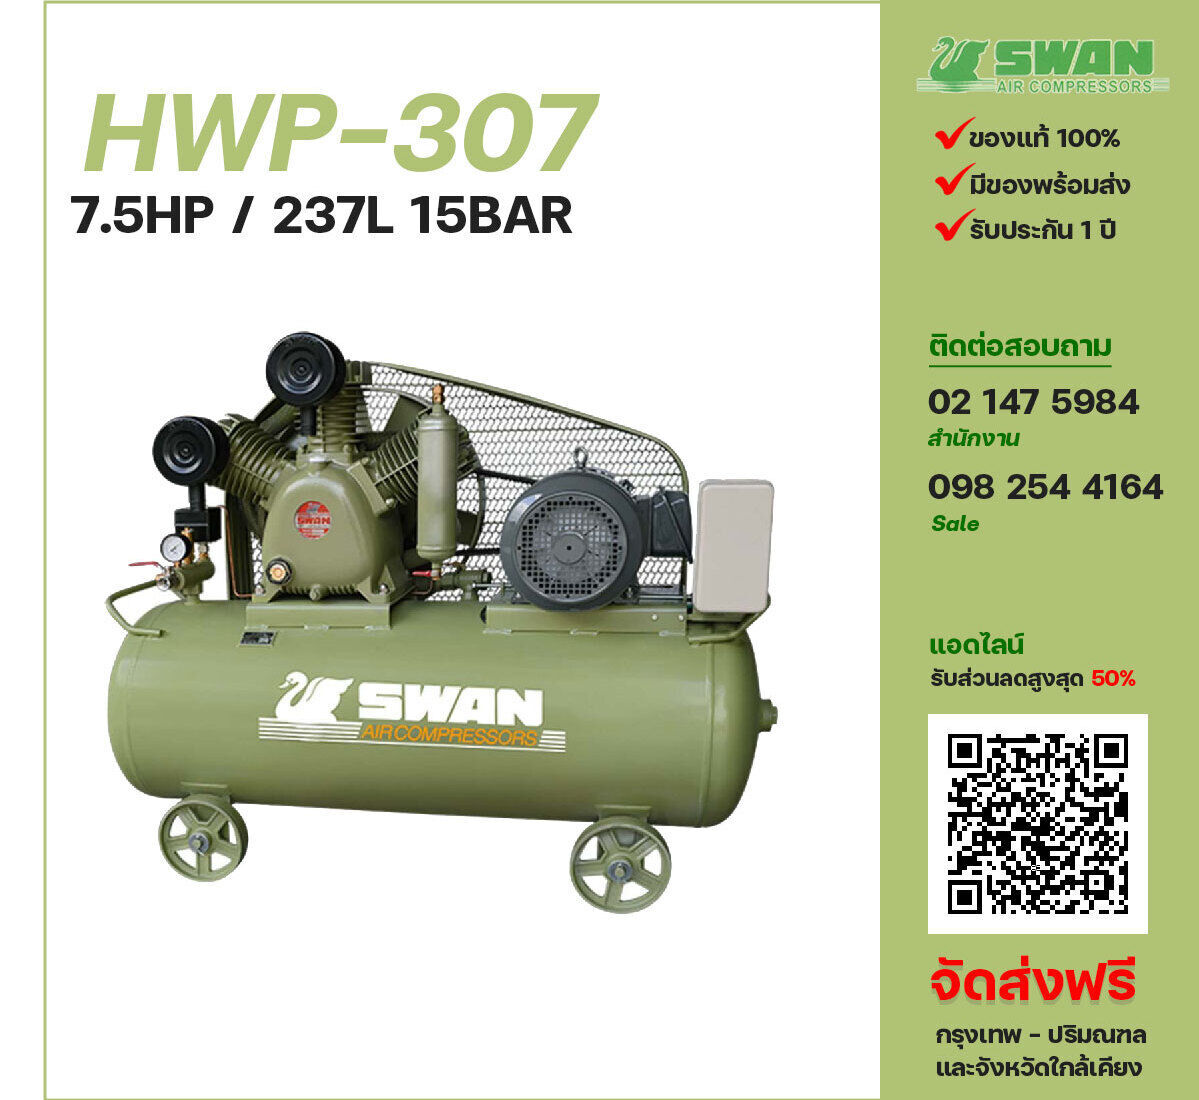 ปั๊มลมสวอนแรงดันสูง SWAN Two-Stage HWP-307 380V ปั๊มลมลูกสูบ ขนาด 3 สูบ 7.5 แรงม้า 237 ลิตร SWAN พร้อมมอเตอร์ ไฟ 380V ส่งฟรี กรุงเทพฯ-ปริมณฑล รับประกัน 1 ปี